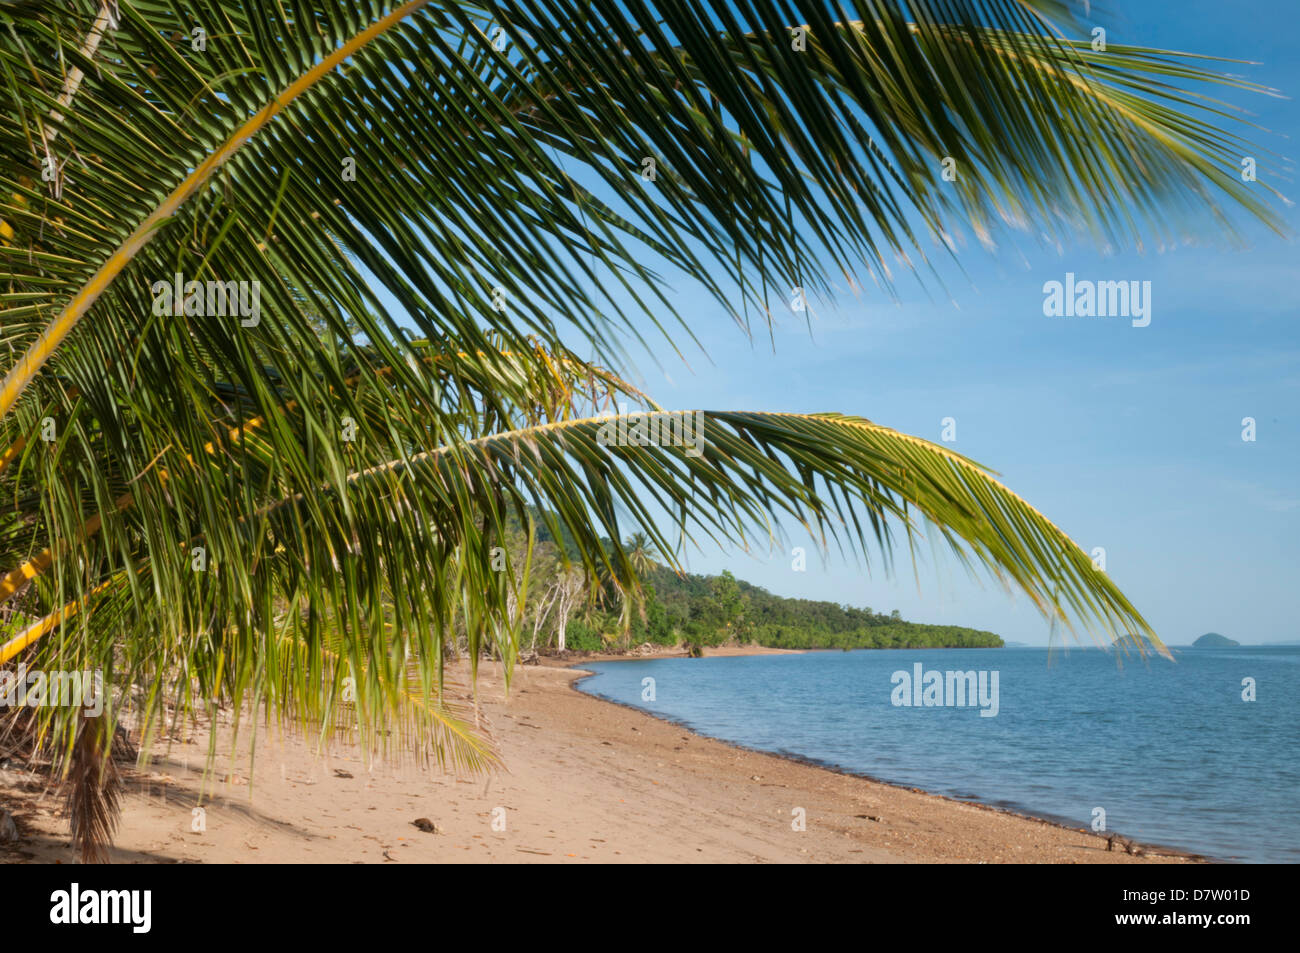 Plage de Dunk Island avec des îles au large, feuilles de palmier, Grande Barrière de Corail, site du patrimoine mondial de l'UNESCO, Queensland, Australie Banque D'Images